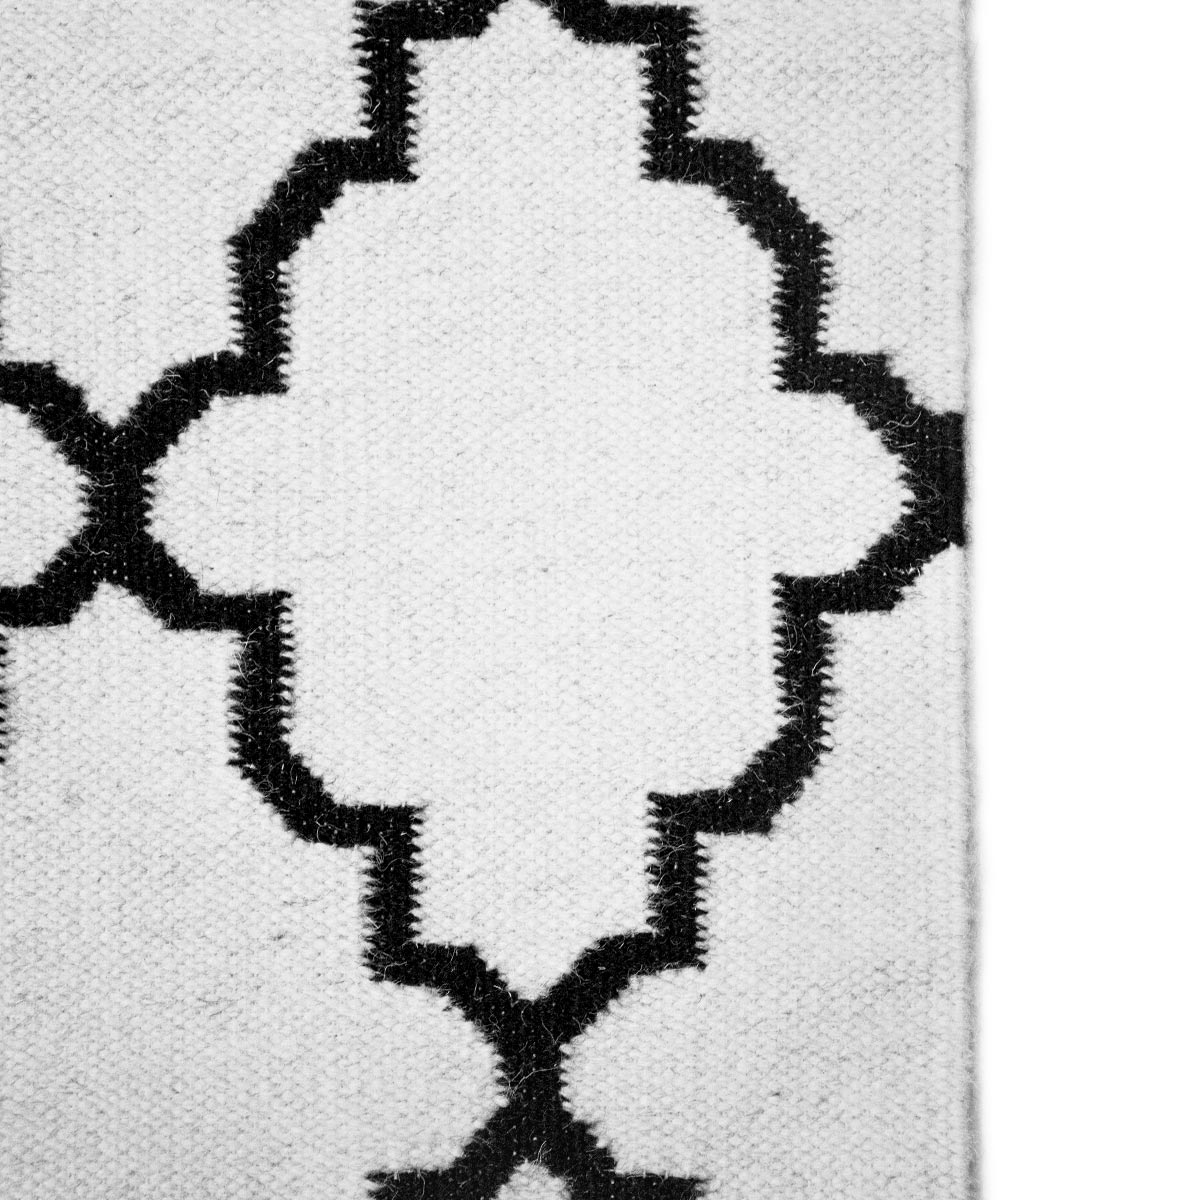 שטיח קילים הדס 09 לבן/שחור | השטיח האדום